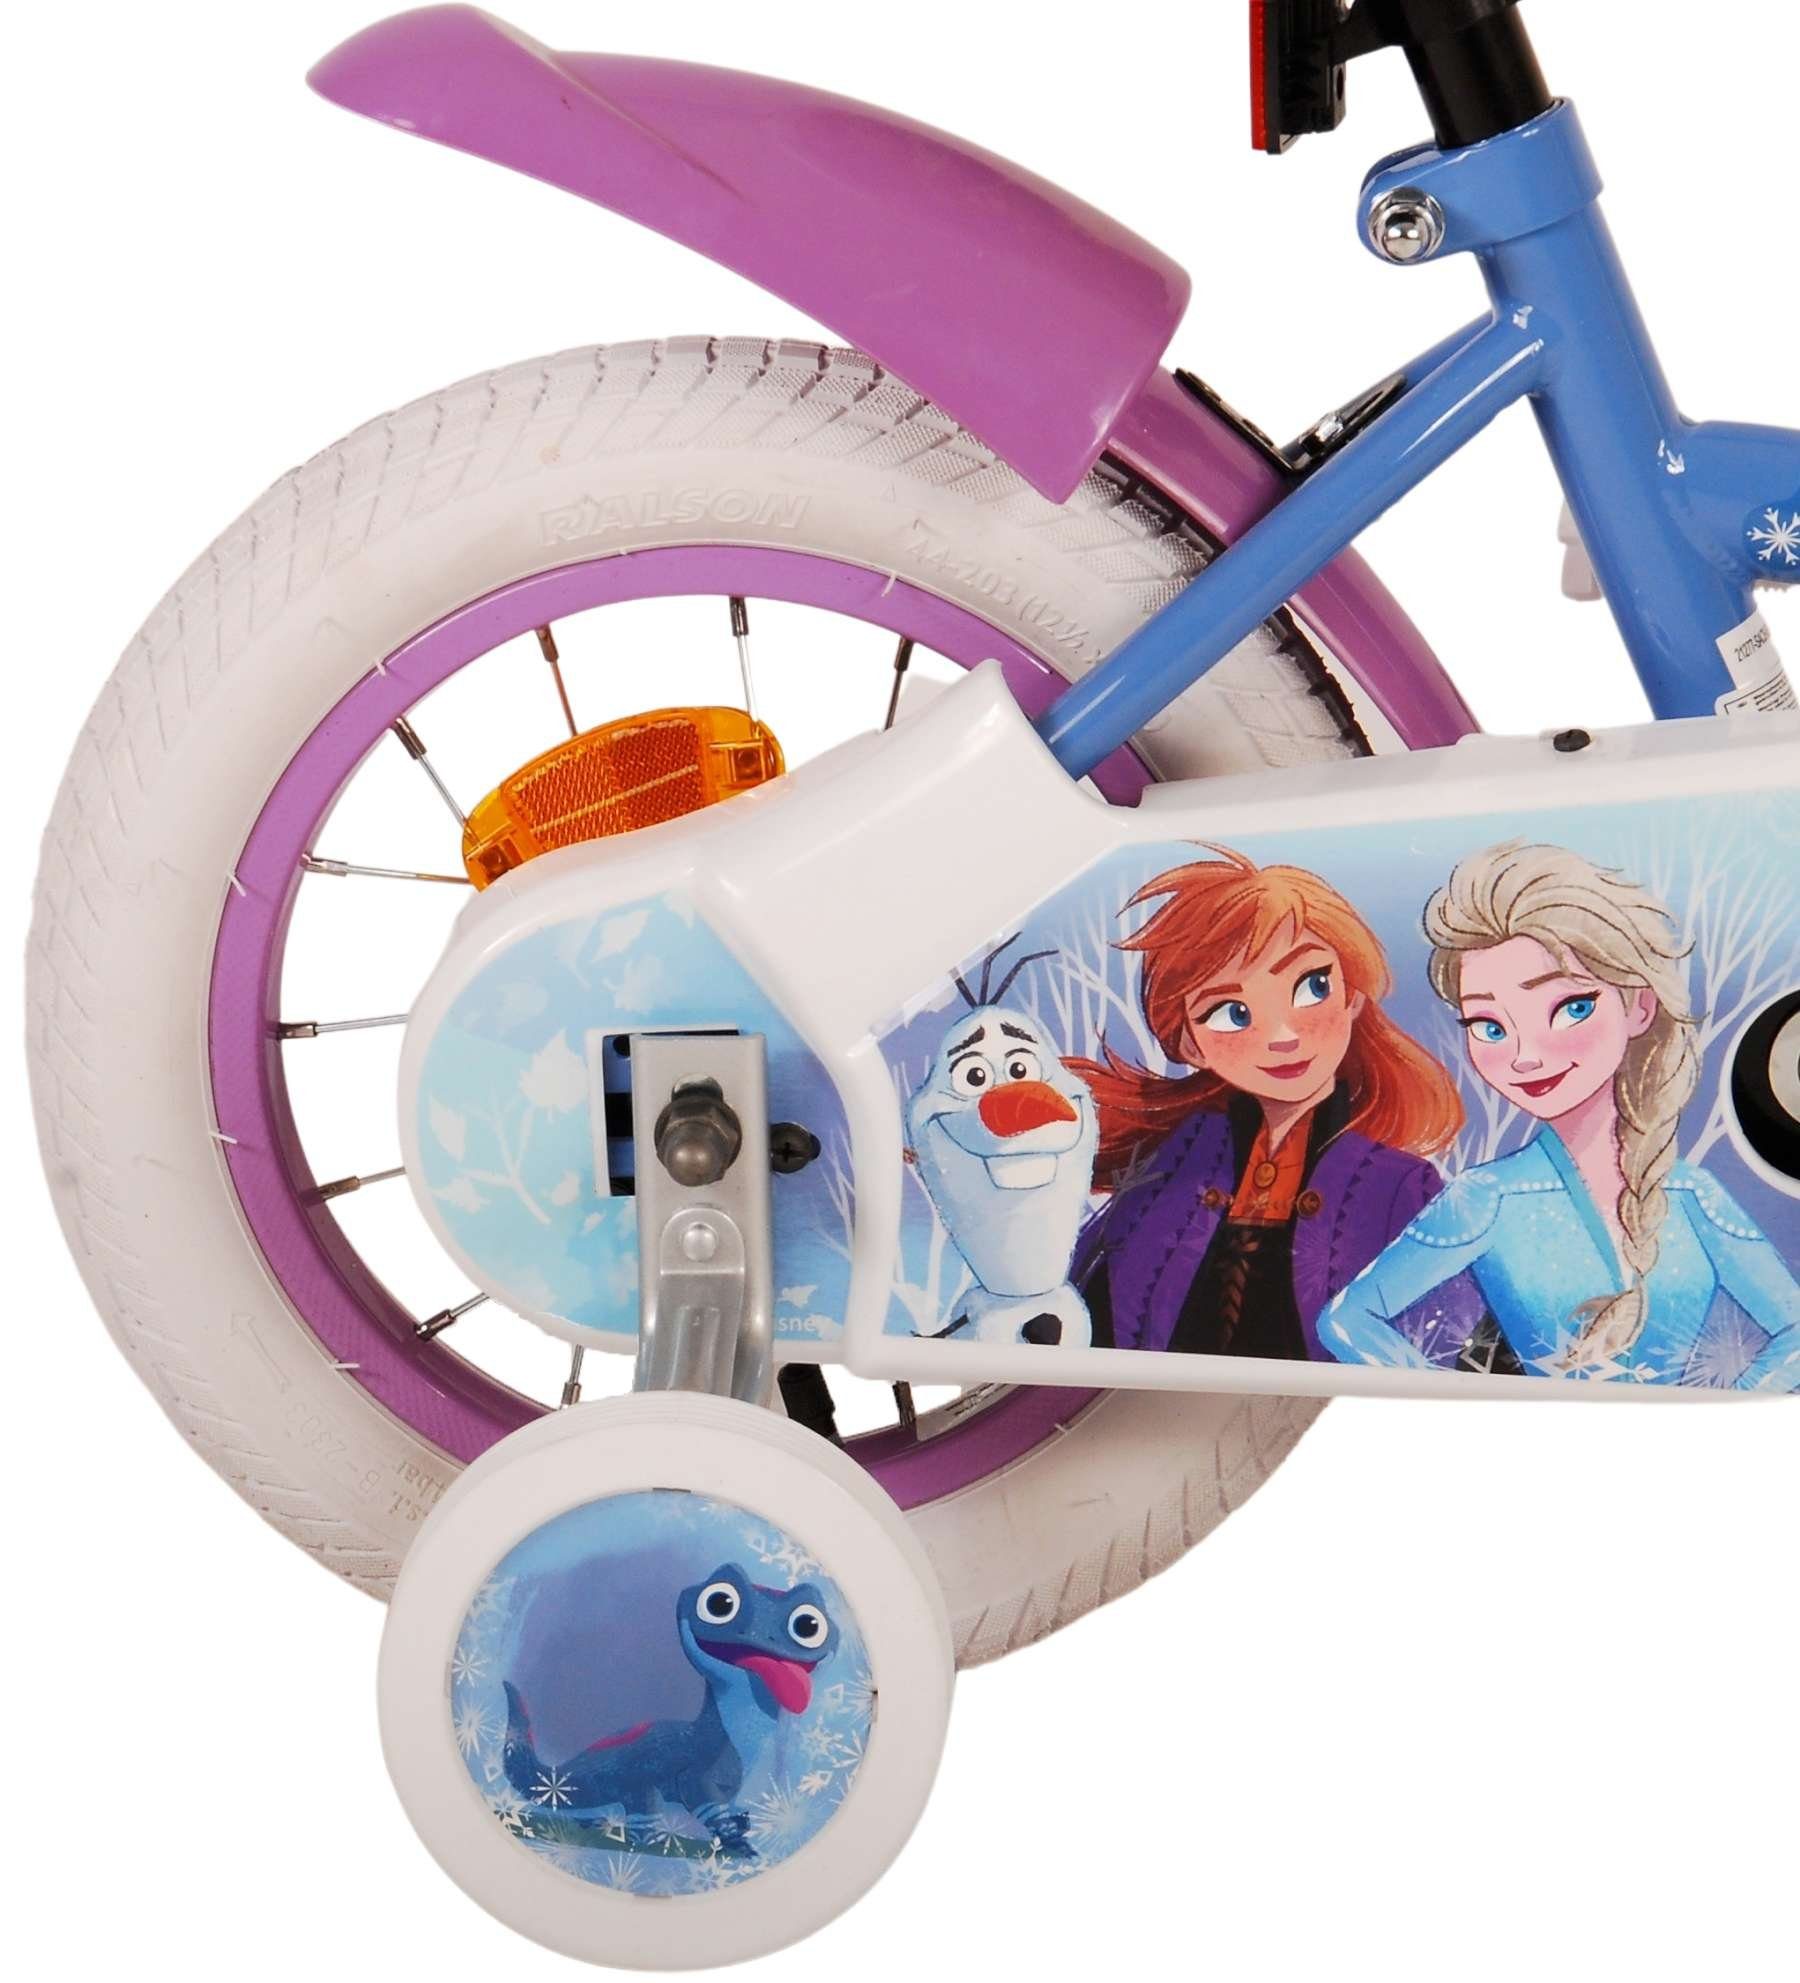 Luftbereifung bis Jahre, zusammengebaut, - Rücktrittbremse, Zoll Disney Frozen 85% Blau - Volare Mädchen - Lila 60 - 12 - 4,5 kg 3 / Kinderfahrrad